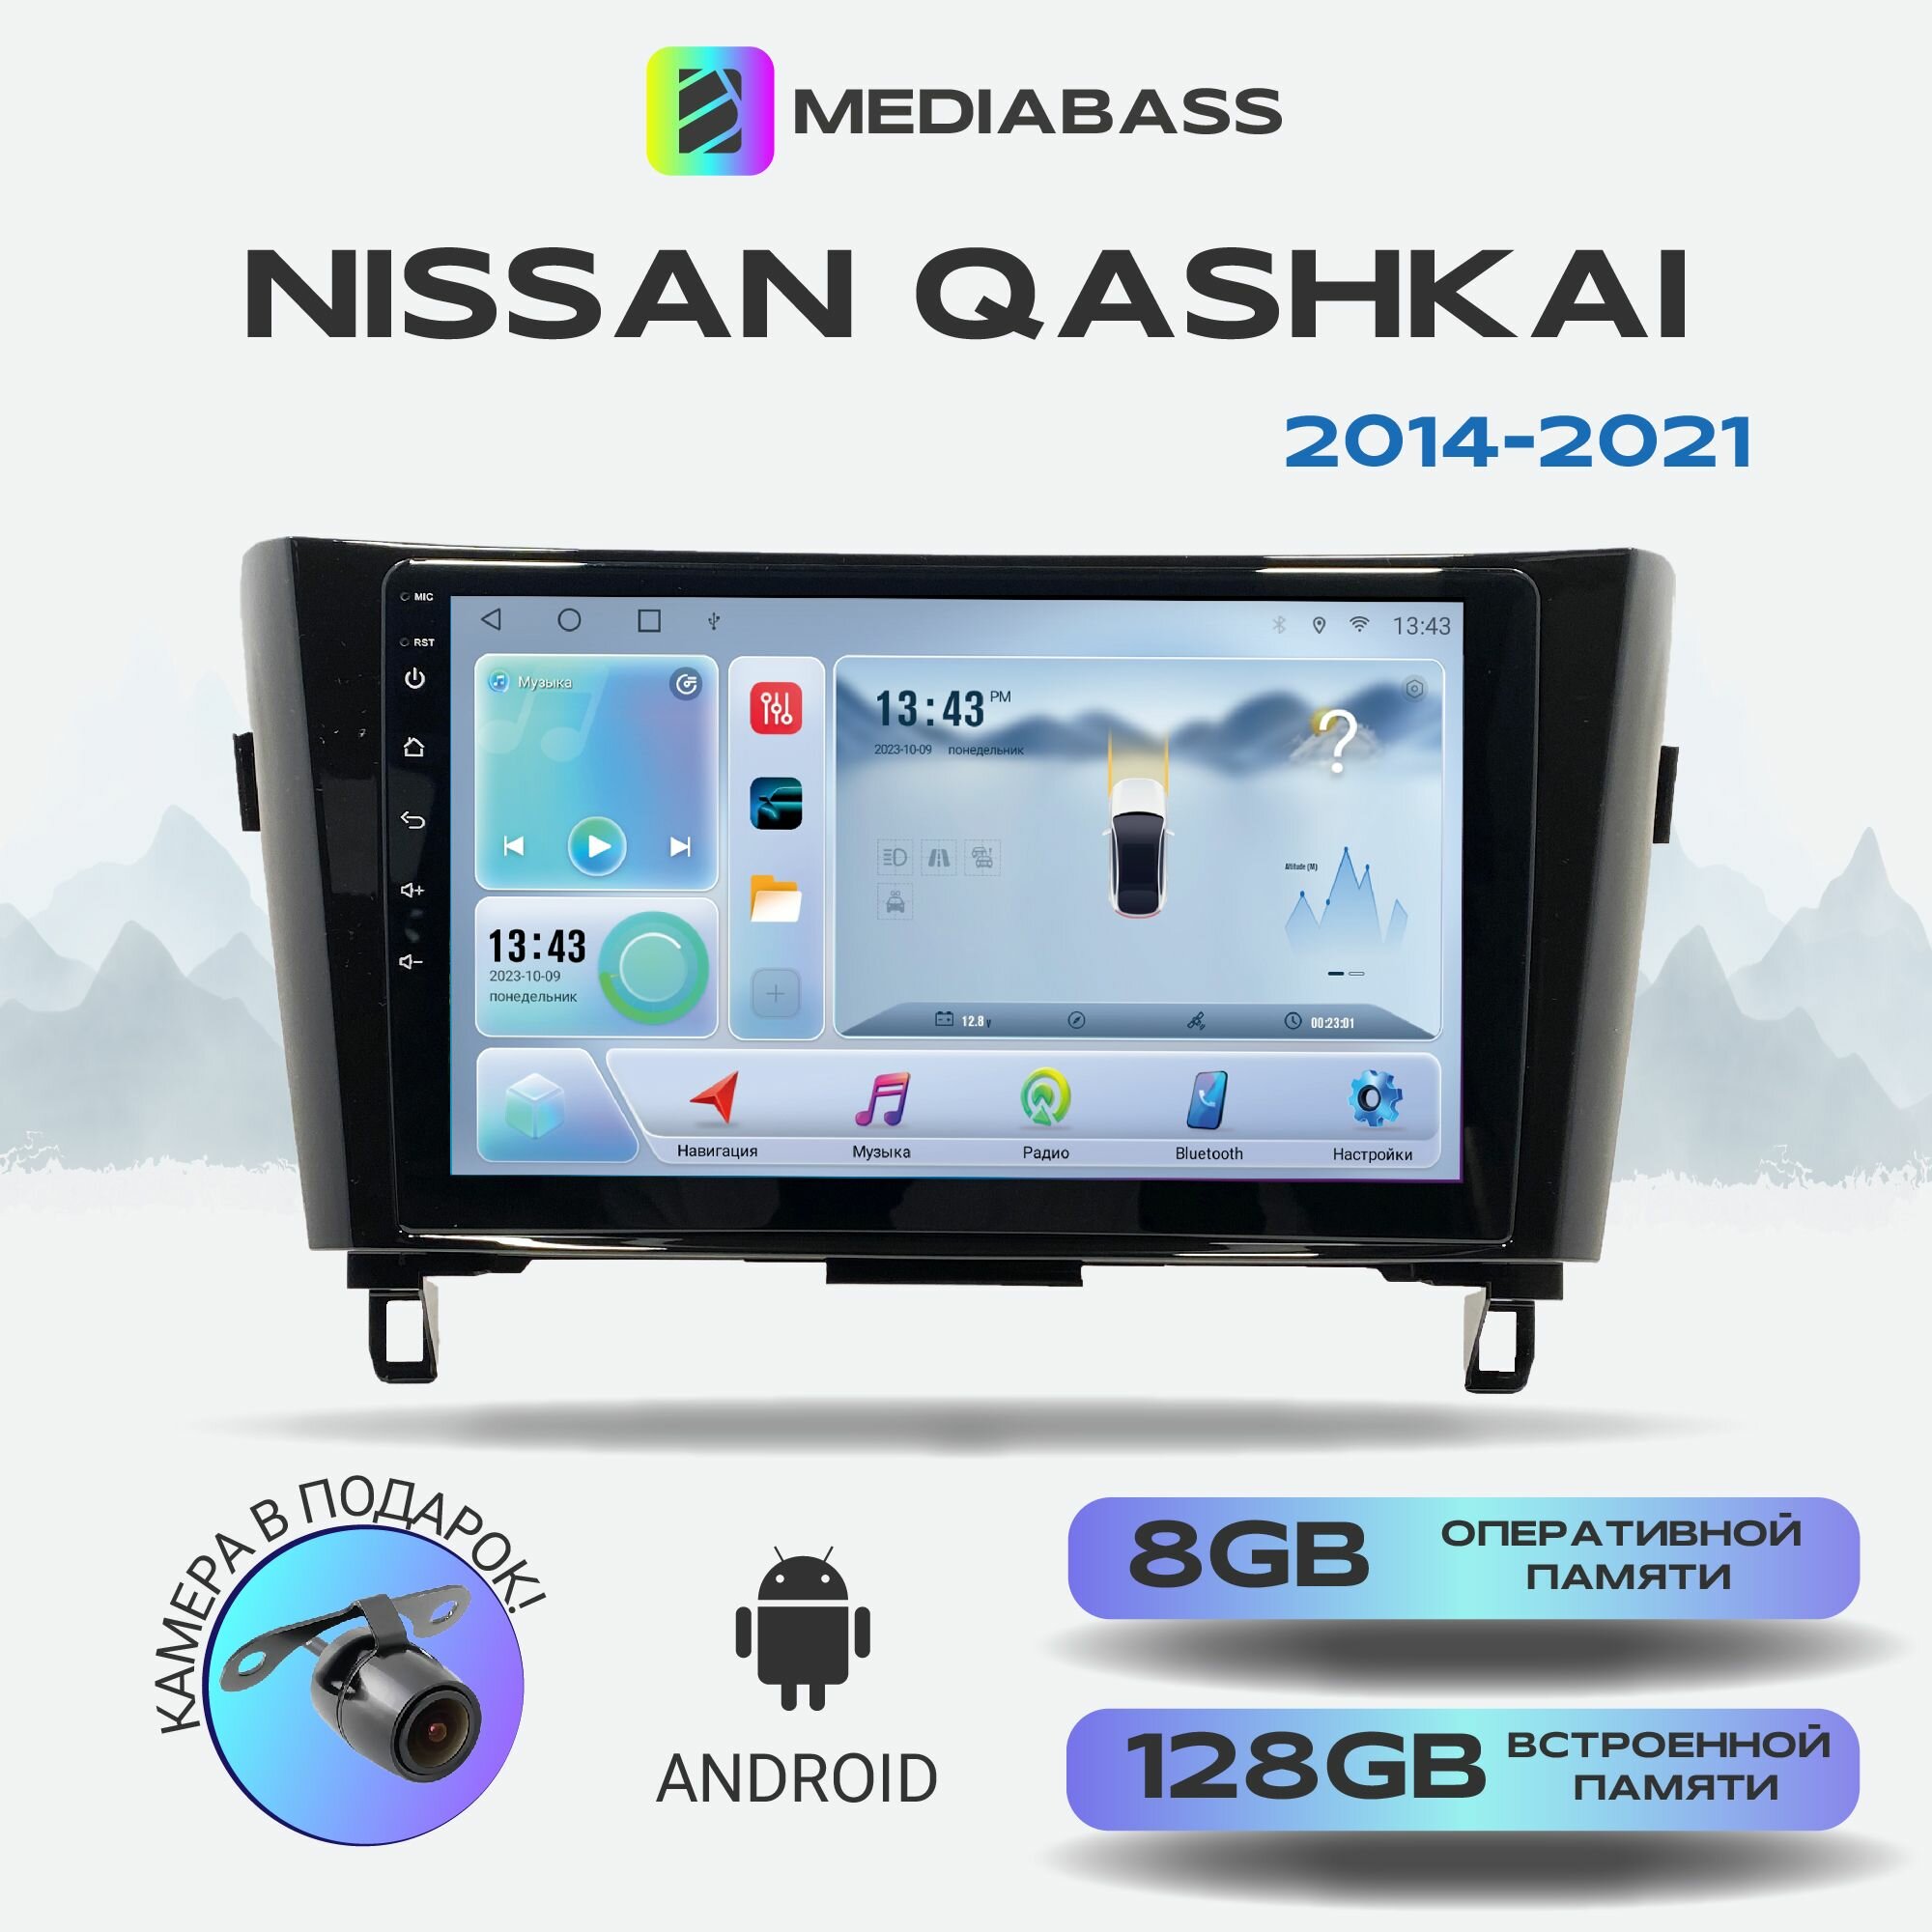 Магнитола Zenith Nissan Qashkai 2014-2021, Android 12, 8/128ГБ, 8-ядерный процессор, DSP, 4G модем, голосовое управление, чип-усилитель TDA7851, 4G LTE / Ниссан Кашкай